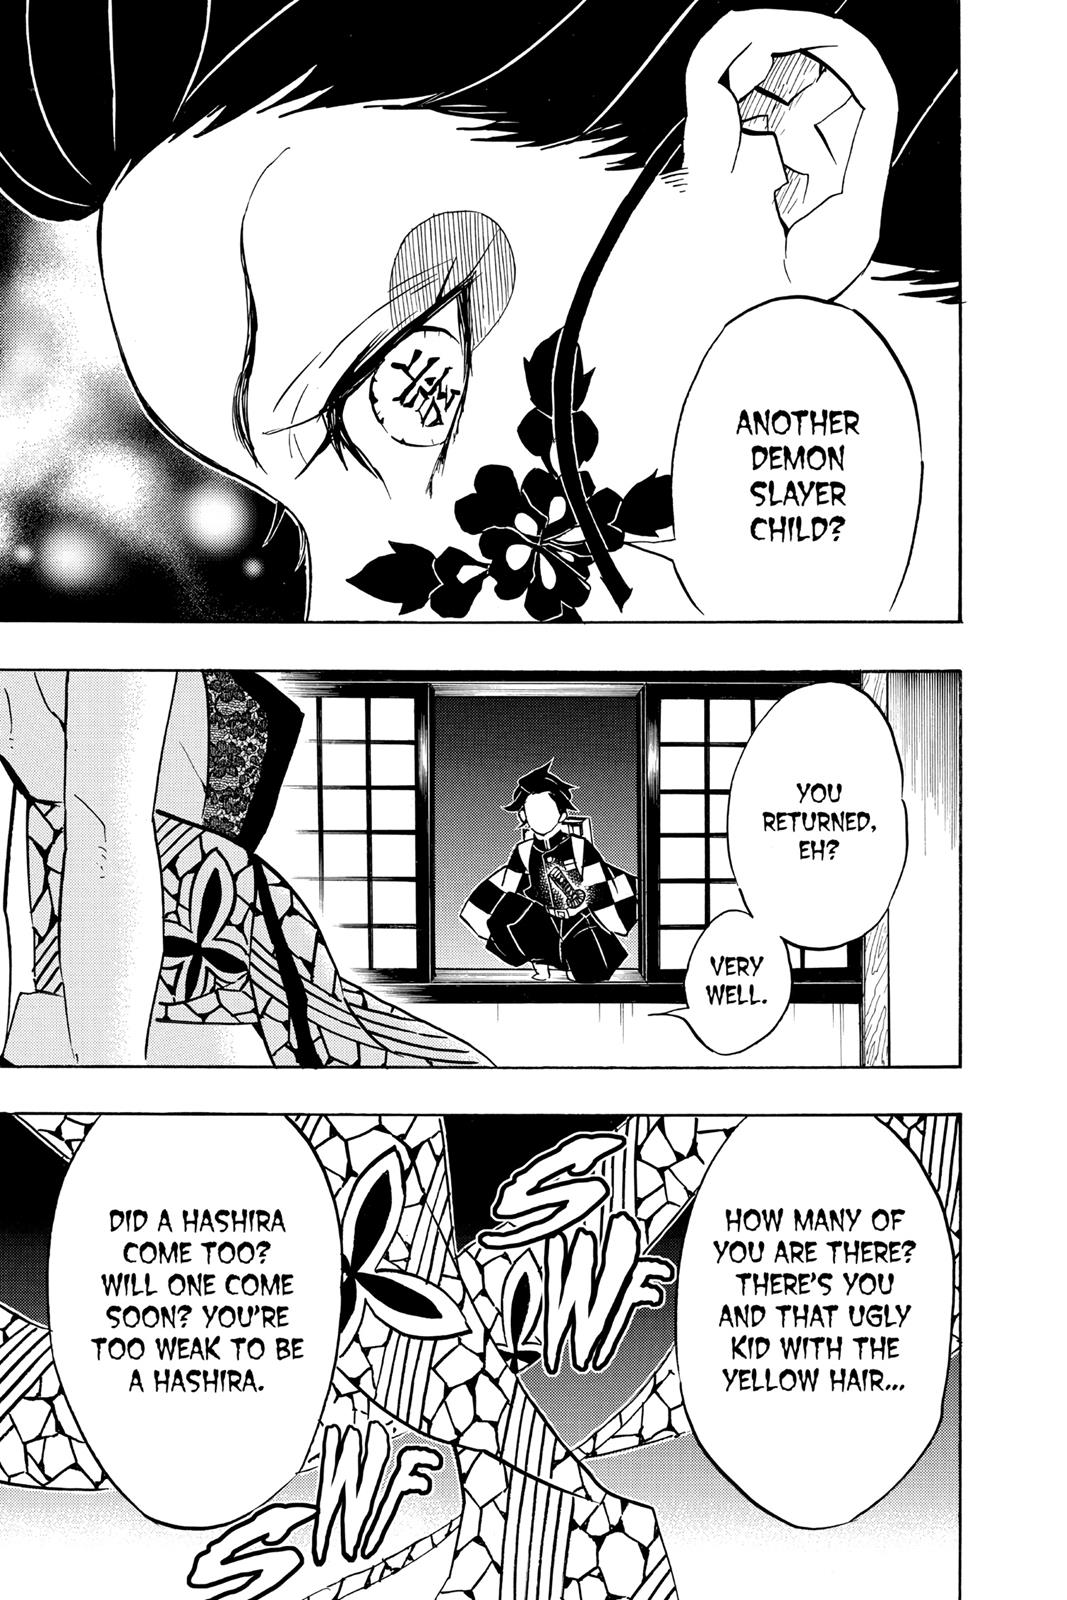 Demon Slayer Manga Manga Chapter - 76 - image 6